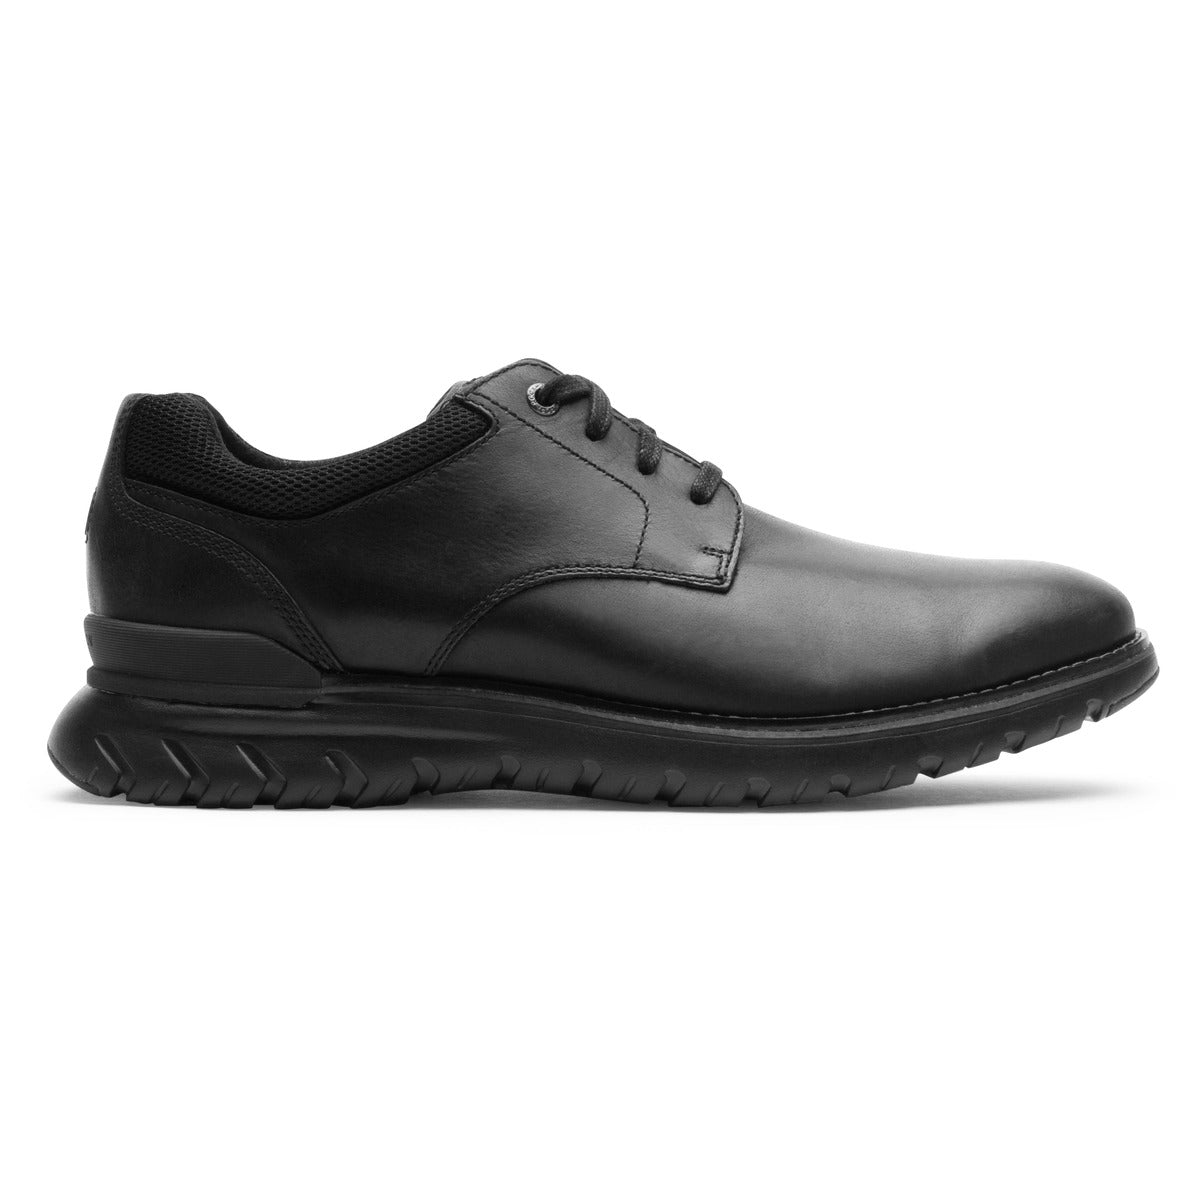 Men's Total Motion Comfort Dress Shoes | Rockport